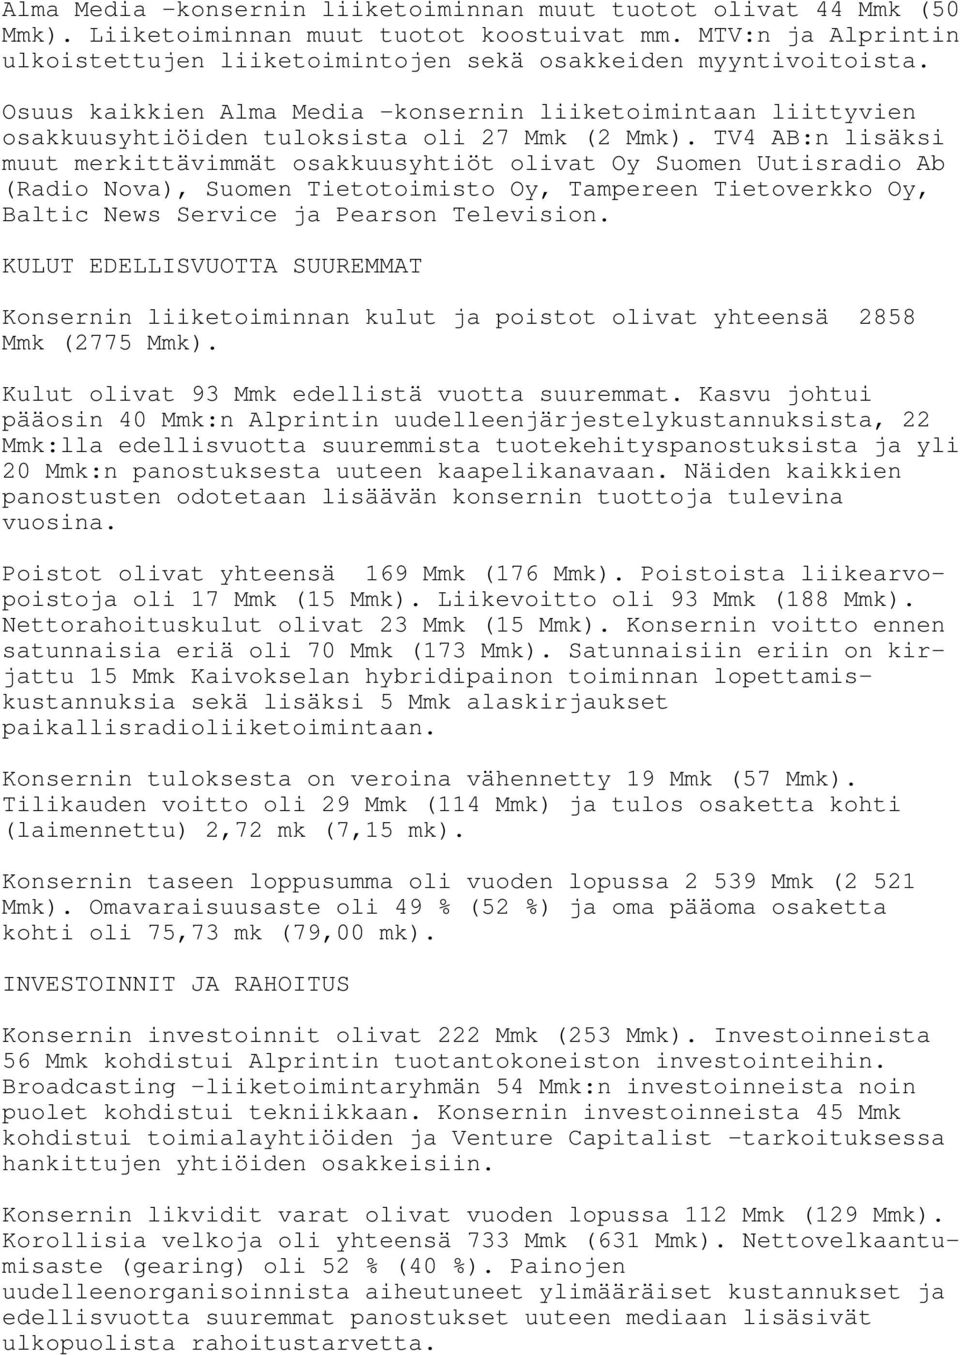 TV4 AB:n lisäksi muut merkittävimmät osakkuusyhtiöt olivat Oy Suomen Uutisradio Ab (Radio Nova), Suomen Tietotoimisto Oy, Tampereen Tietoverkko Oy, Baltic News Service ja Pearson Television.